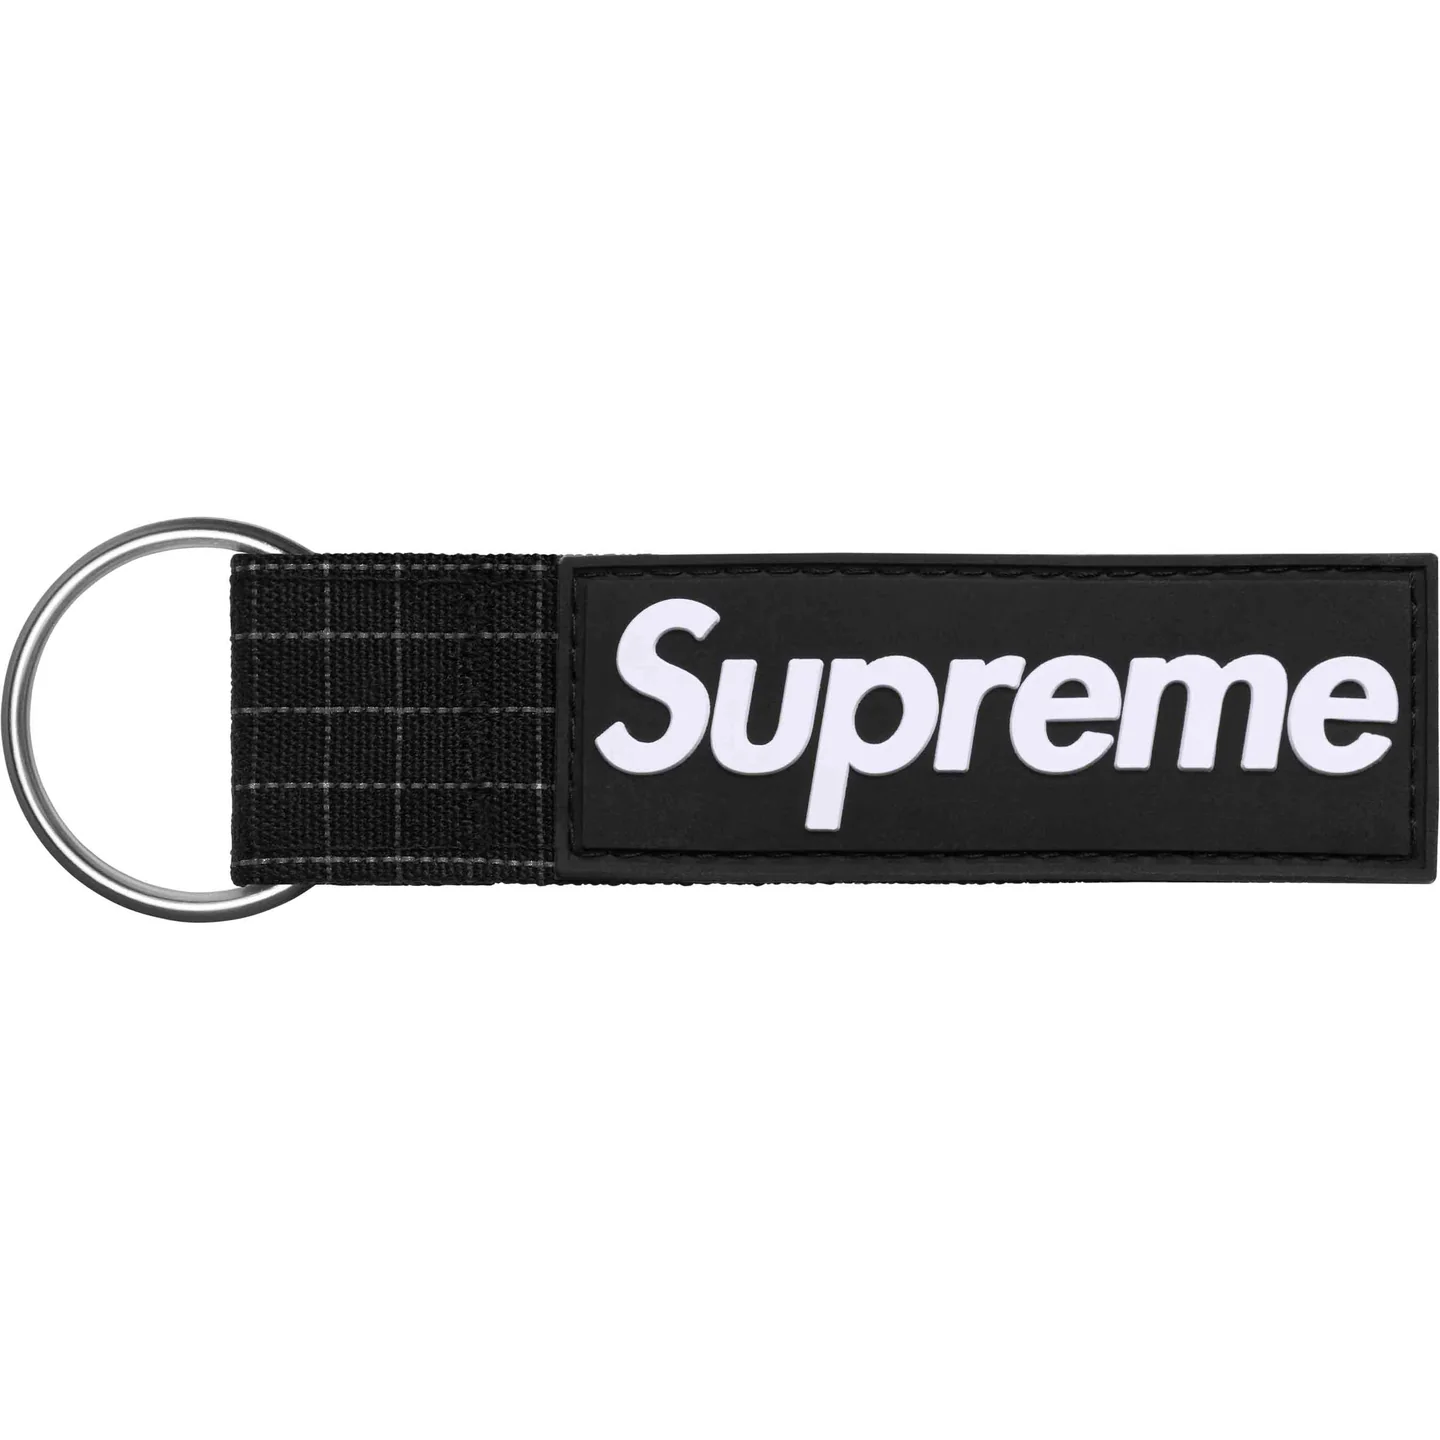 Supreme Ripstop Keychain